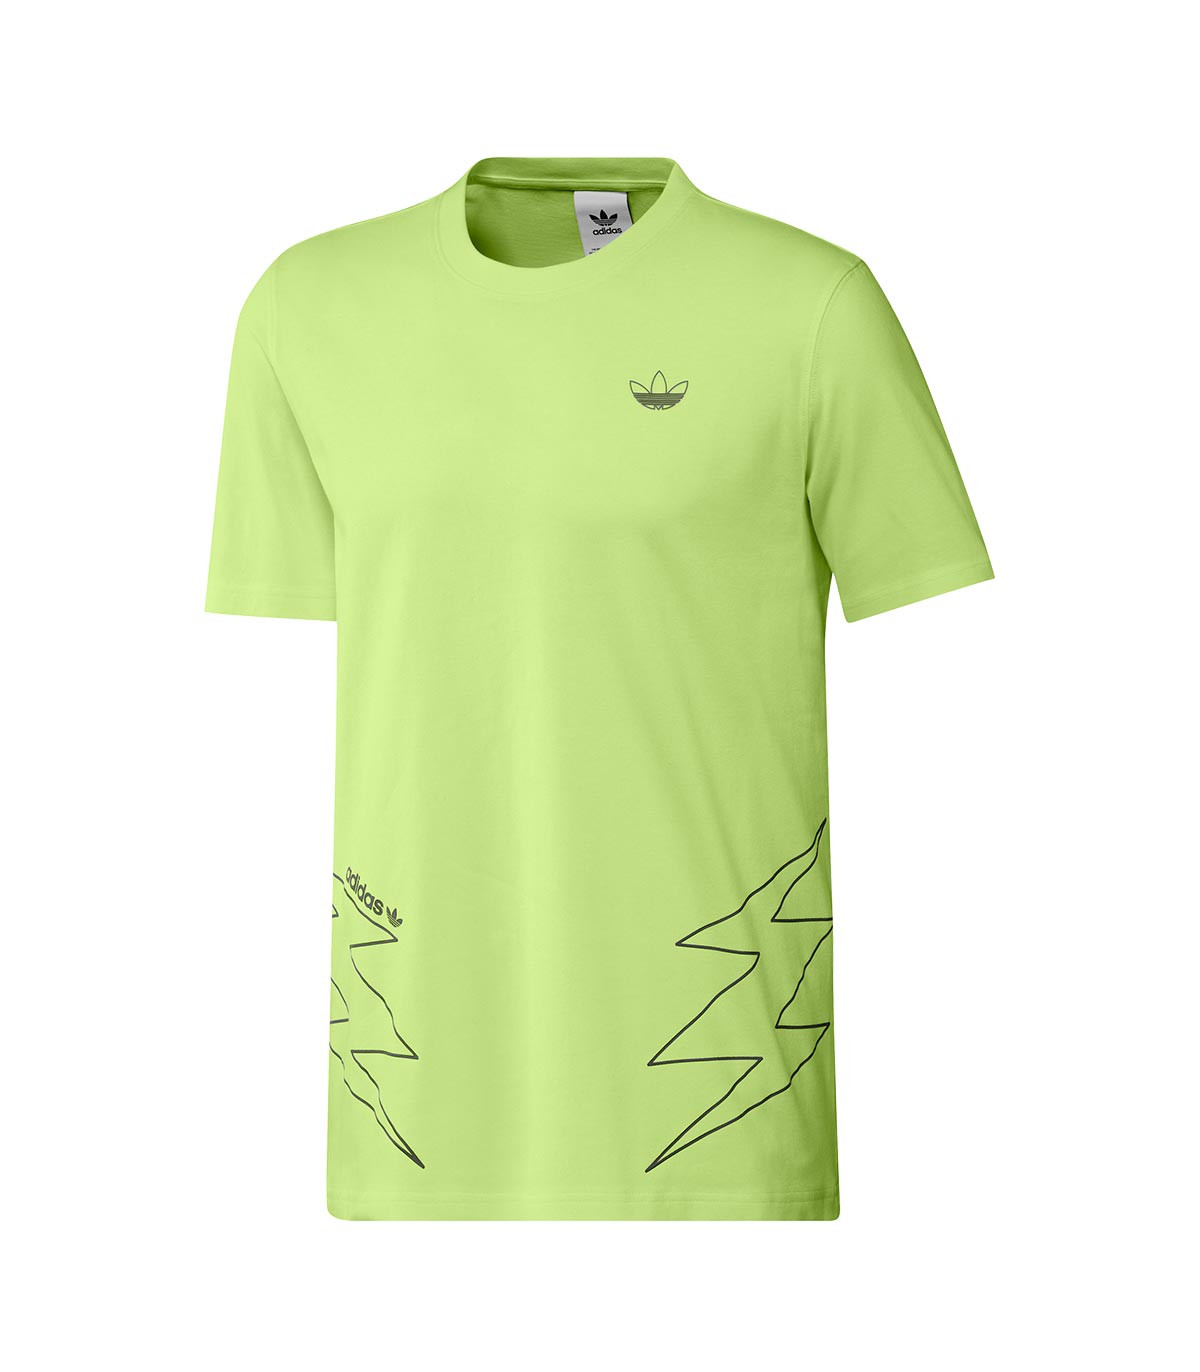 adidas Originals - Camiseta Lightning - Verde